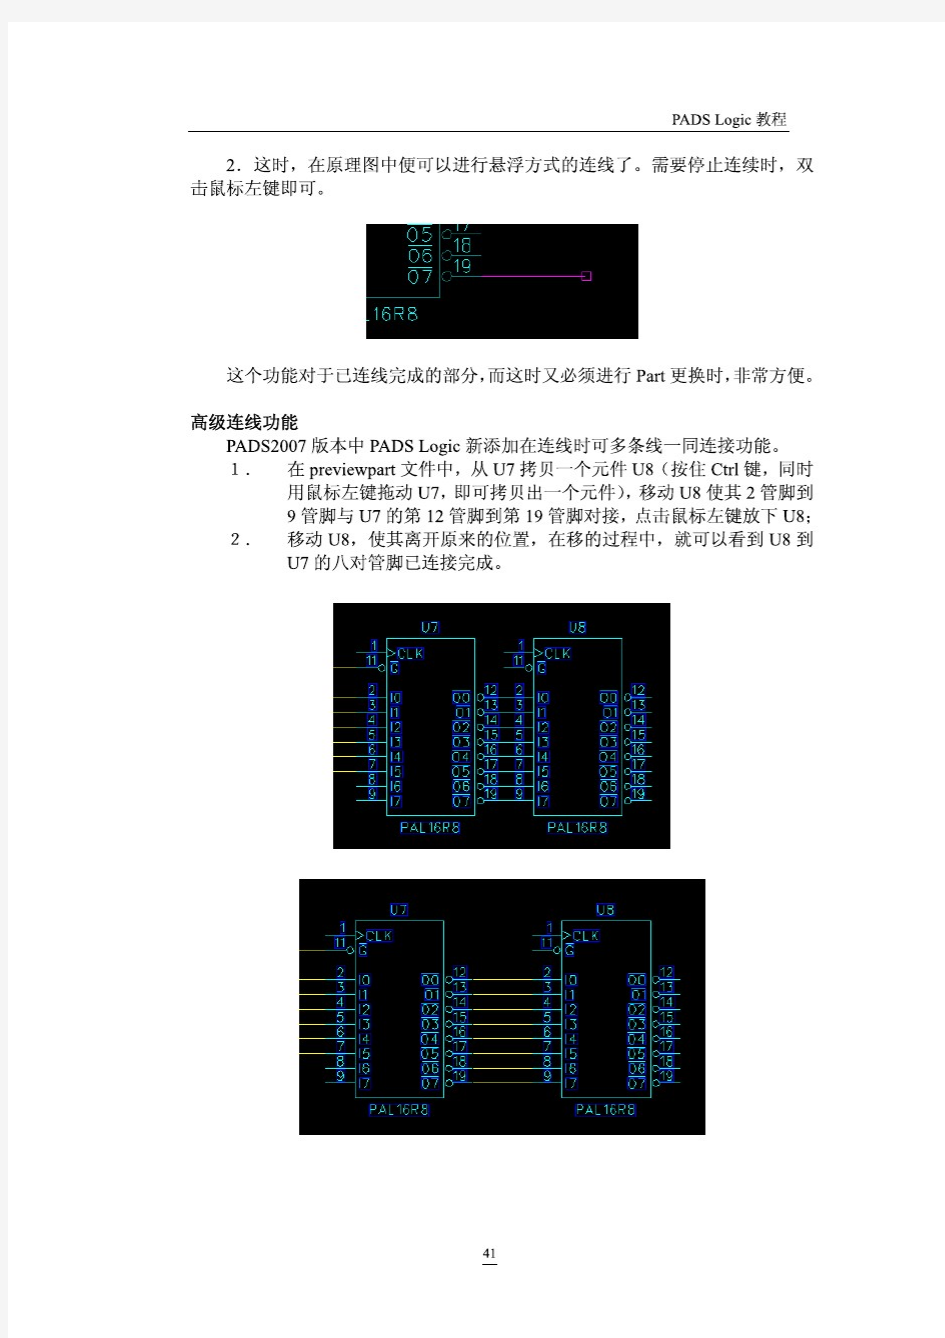 电子工程师培训-PADS2007 Logic教程(下半部分)